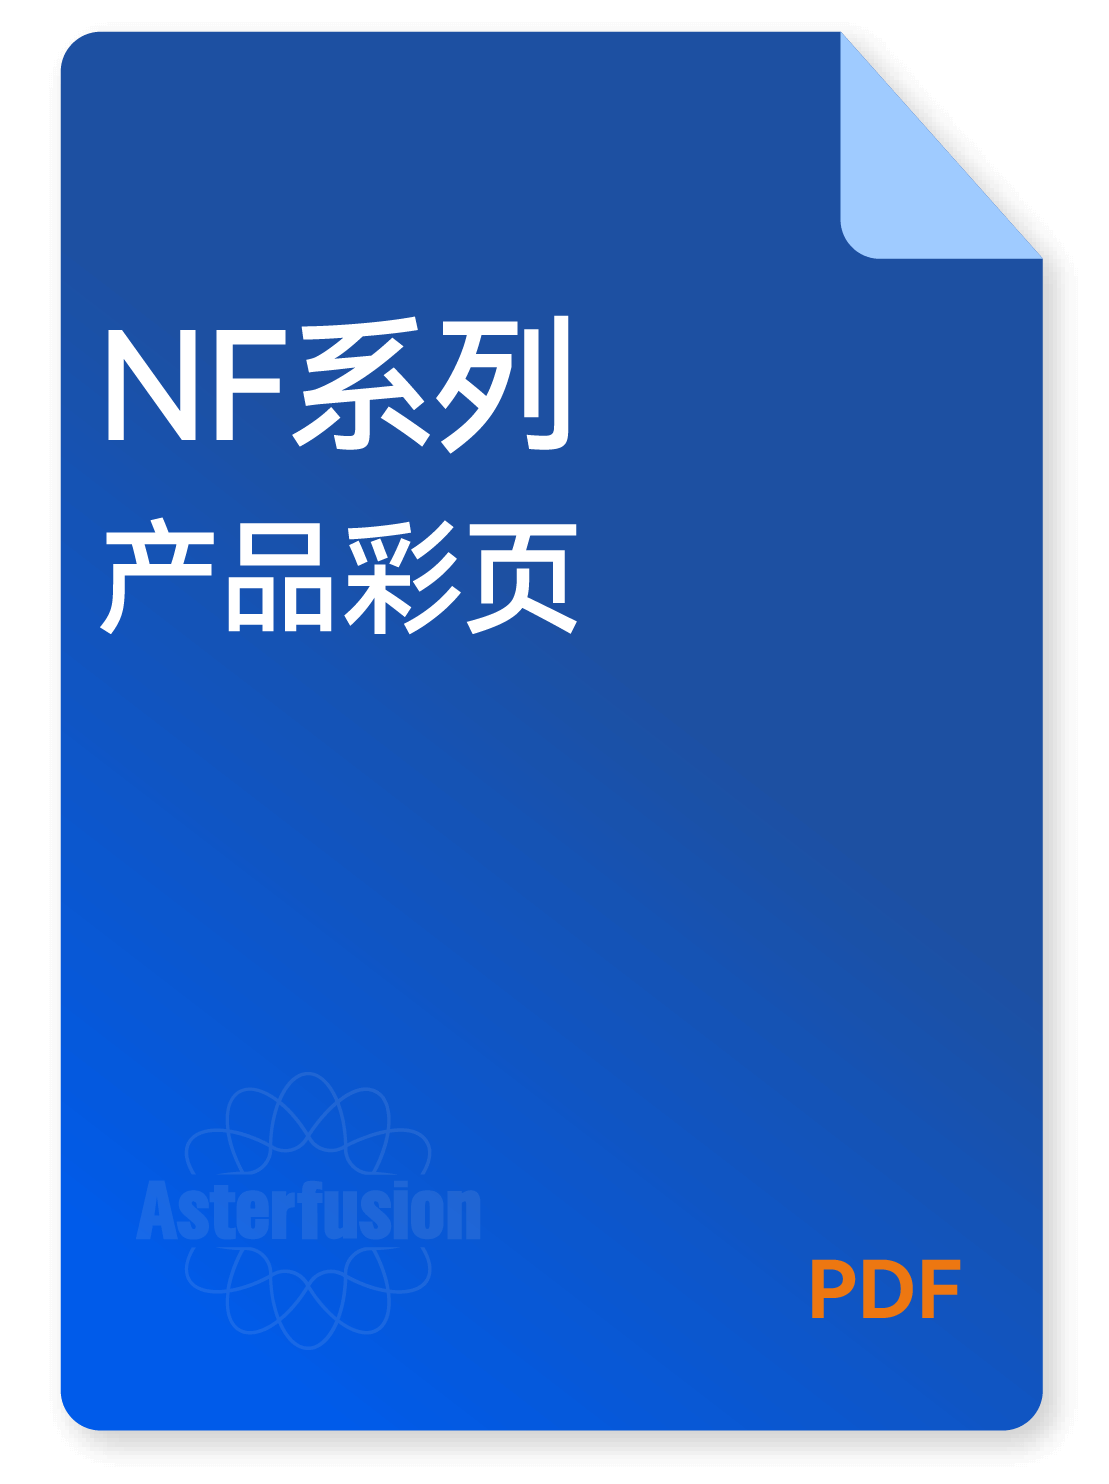 用于NF系列交换机产品资料的下载图标